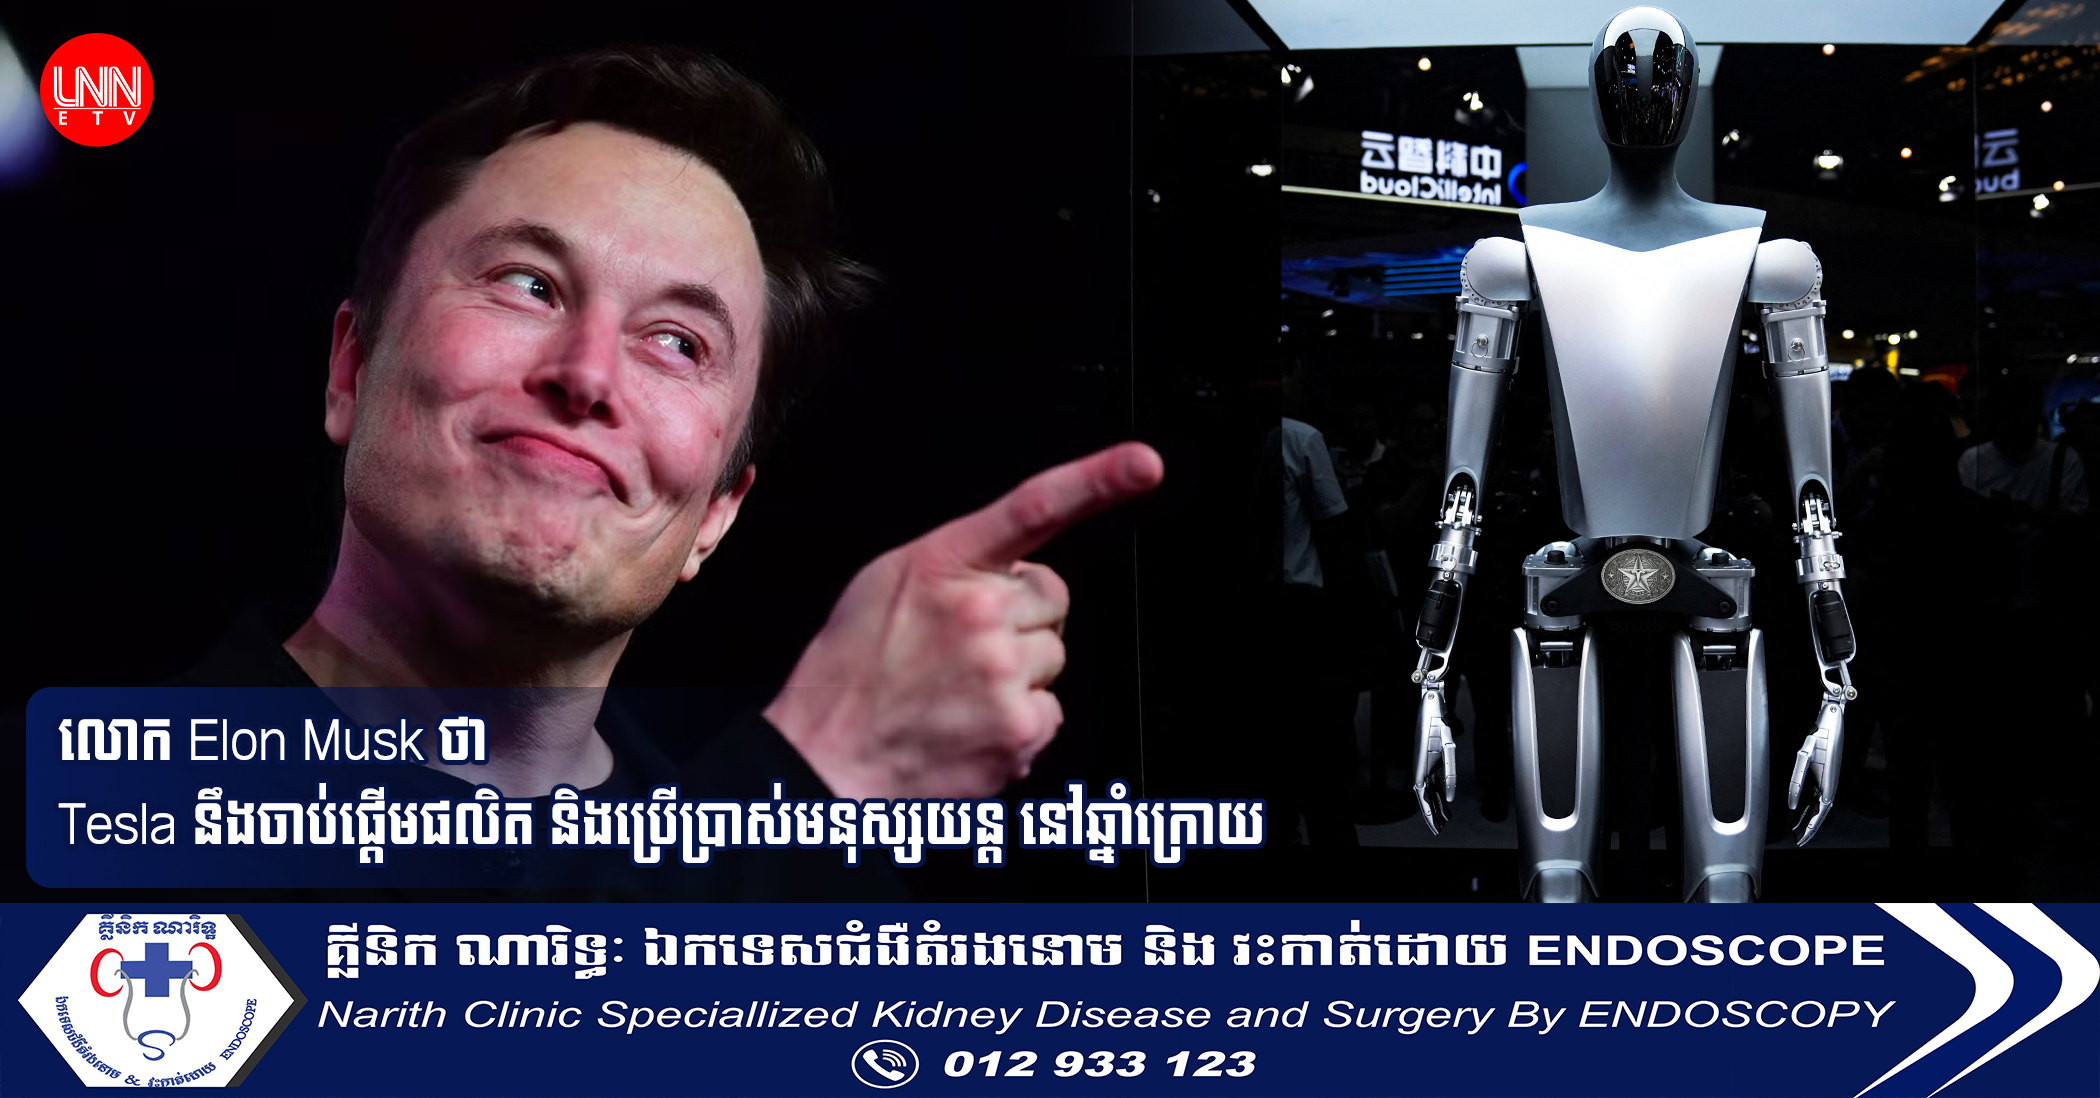 លោក Elon Musk ថា Tesla នឹងចាប់ផ្ដើមផលិត និងប្រើប្រាស់មនុស្សយន្ដ នៅឆ្នាំក្រោយ